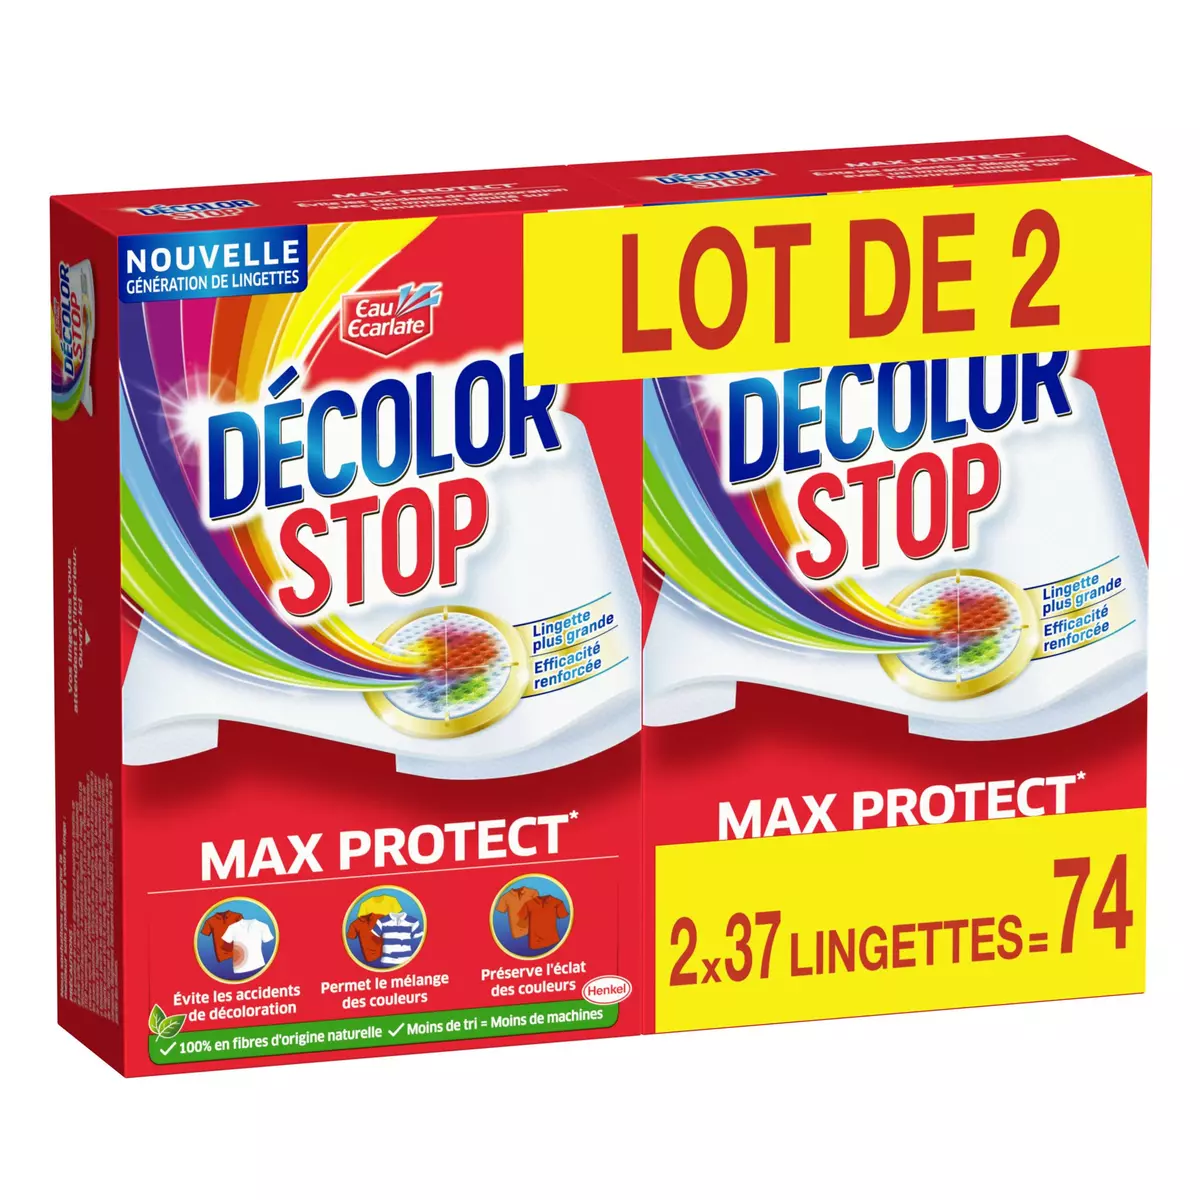 DECOLOR STOP Lingettes anti-décoloration max protect 2x37 lingettes